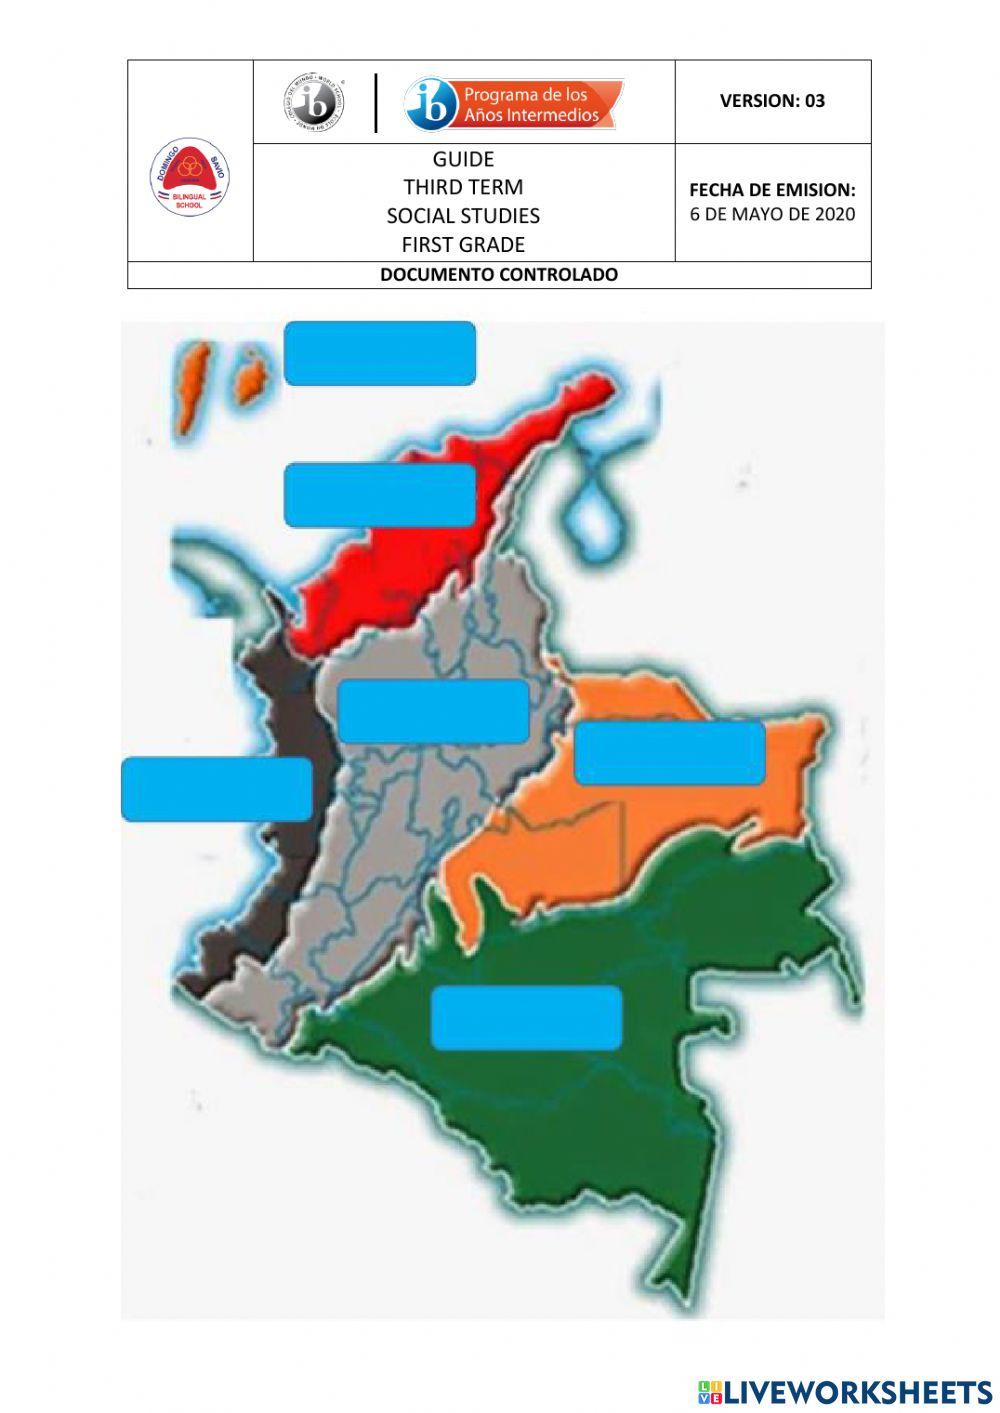 Regiones de colombia